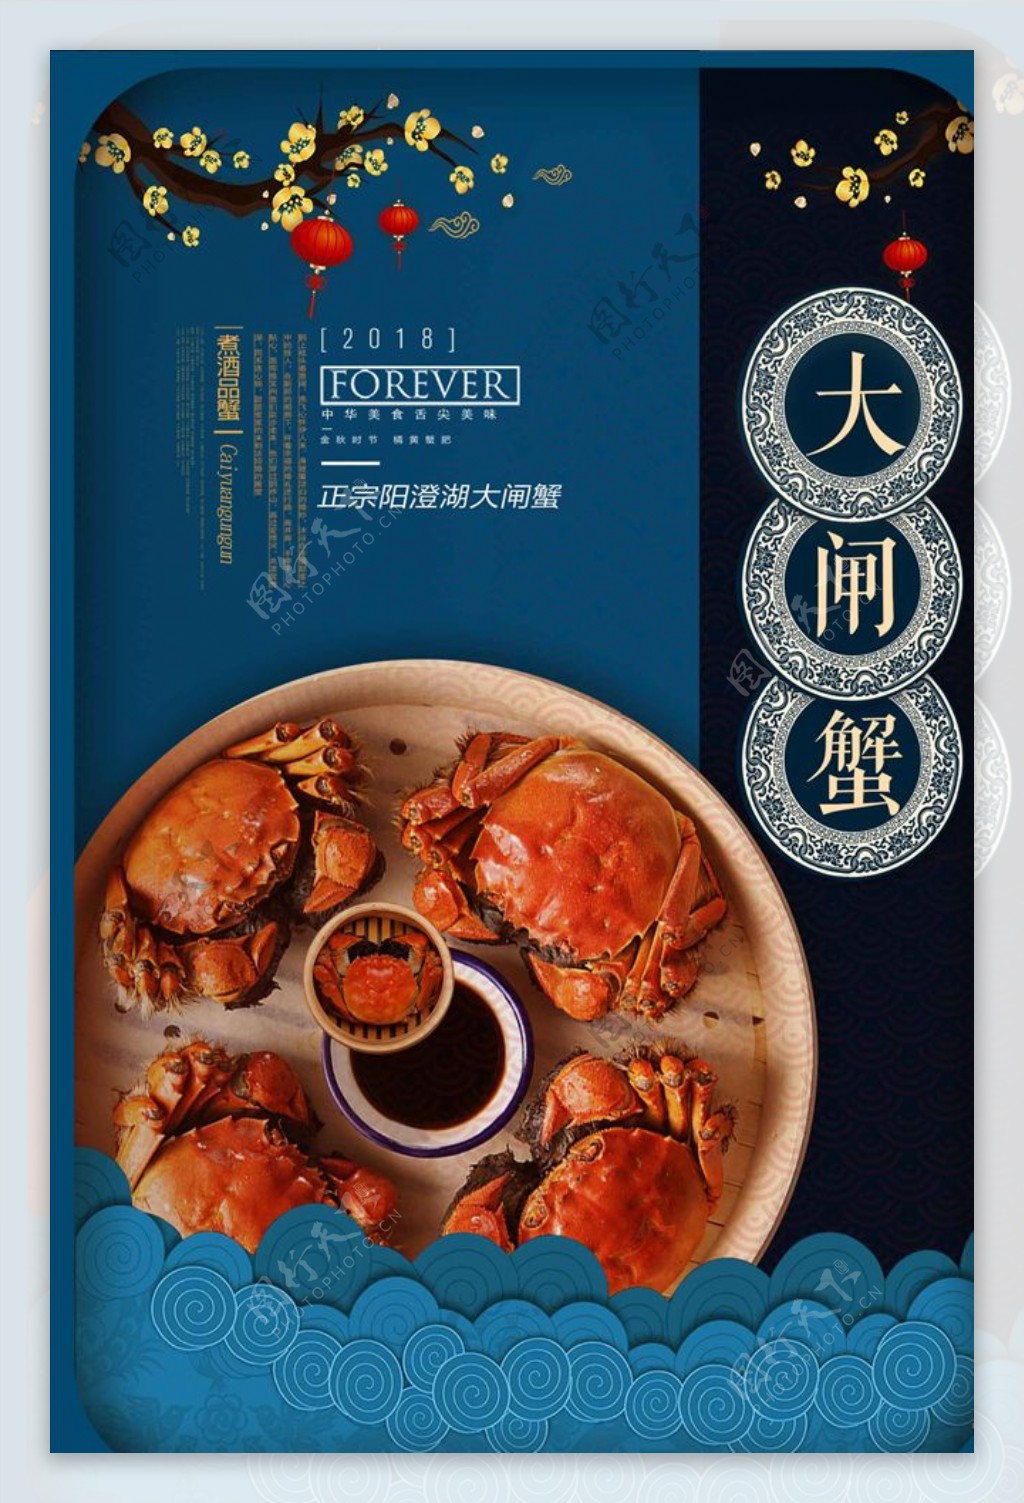 蓝色立体中国风古典艺术大闸蟹餐